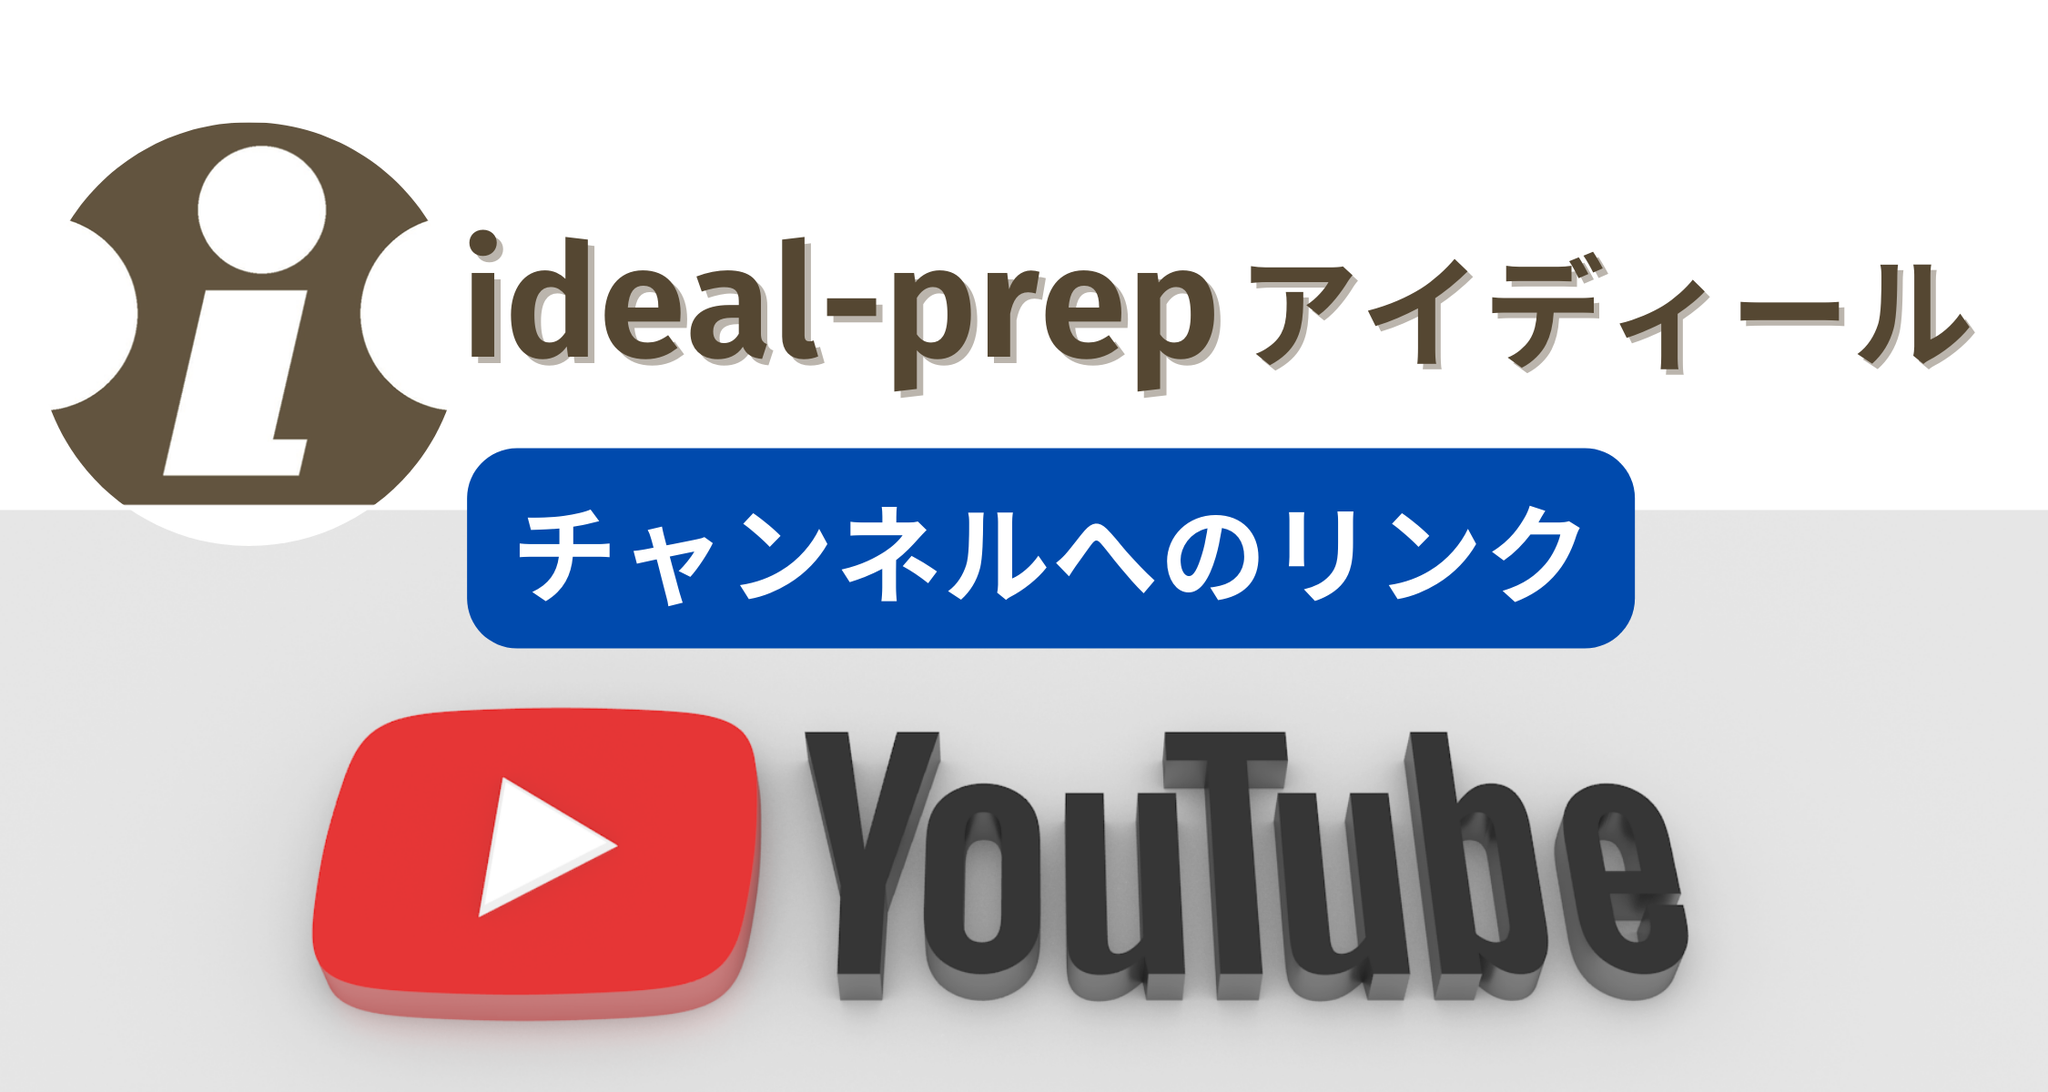 ideal-prepオンライン予備校 Youtubeチャンネル